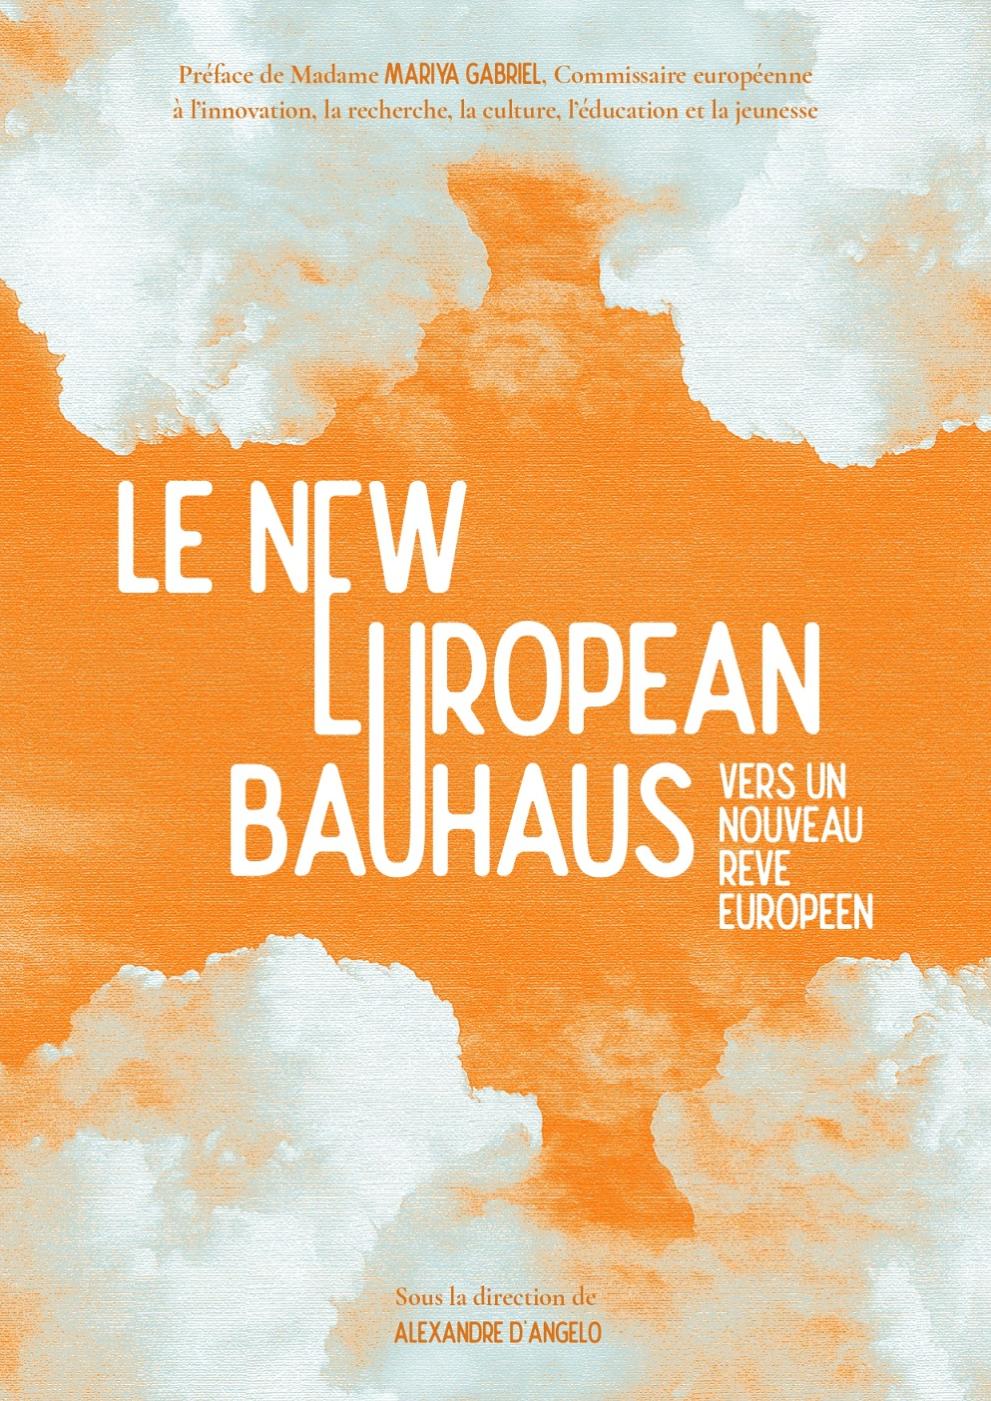 Presentation of the book "Le New European Bauhaus, vers un nouveau rêve européen" (in French)